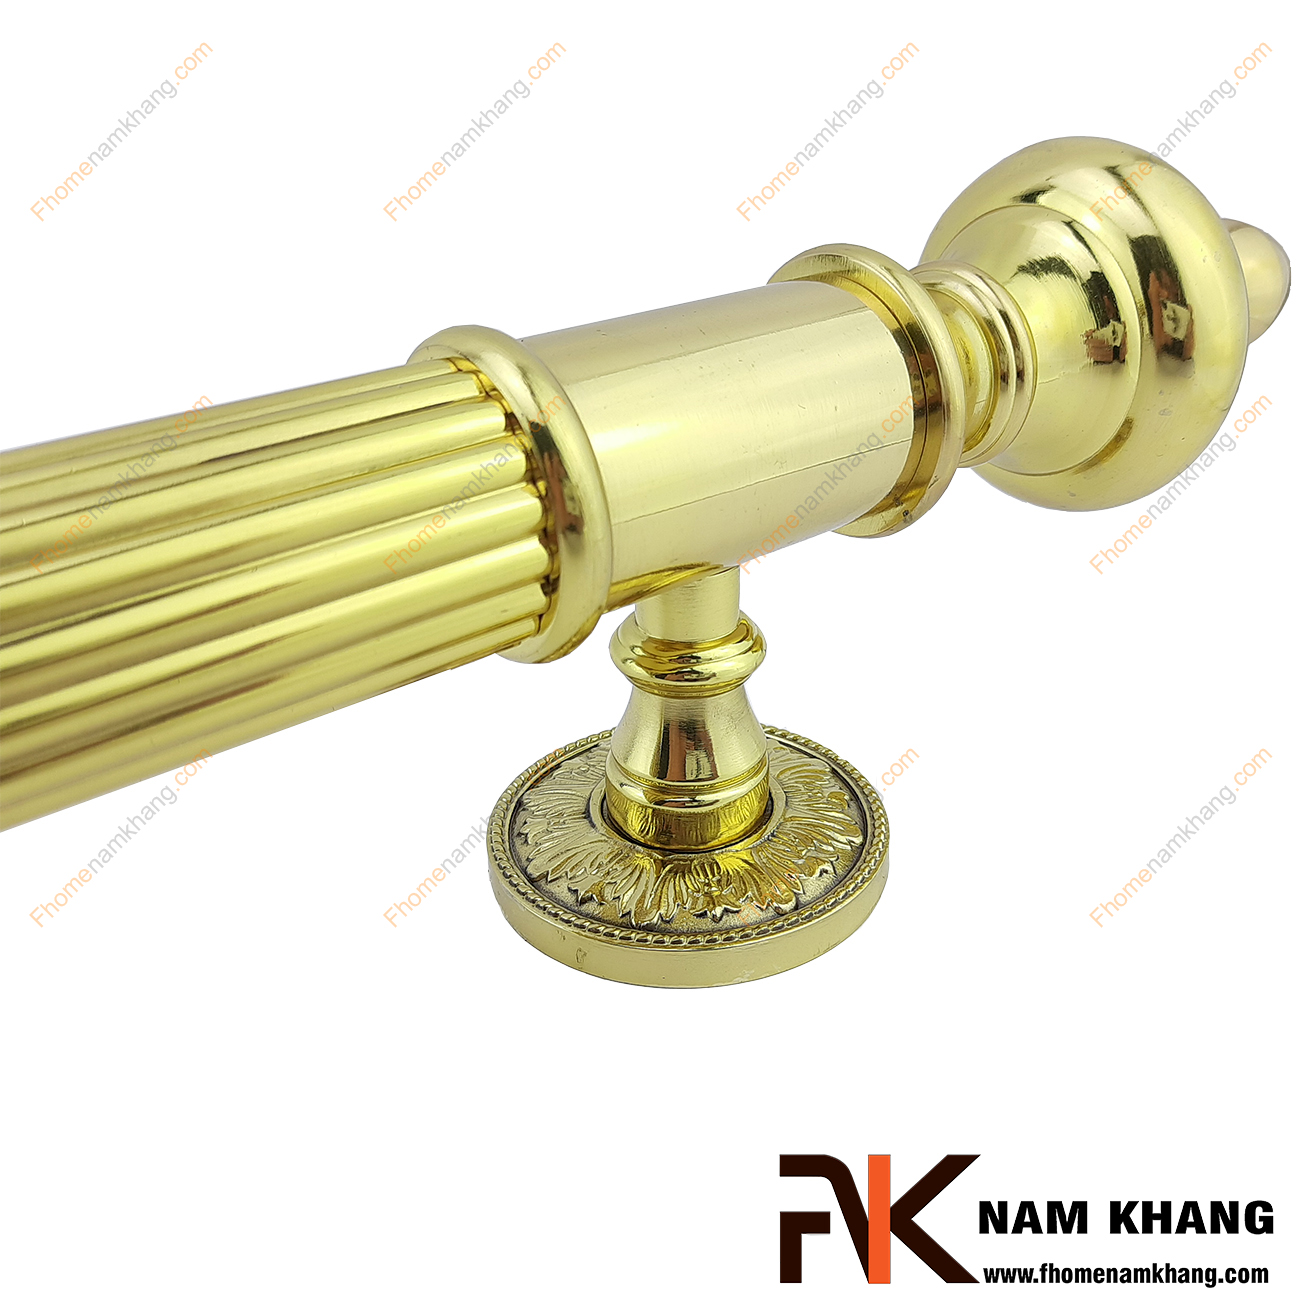 Tay nắm cửa chính màu đồng vàng bằng đồng NKD109-VH là một dạng phụ kiện cửa dành cho các dạng cửa ra vào lớn, cửa sảnh, cửa cao cấp dạng 2 hay 4 cánh cửa.